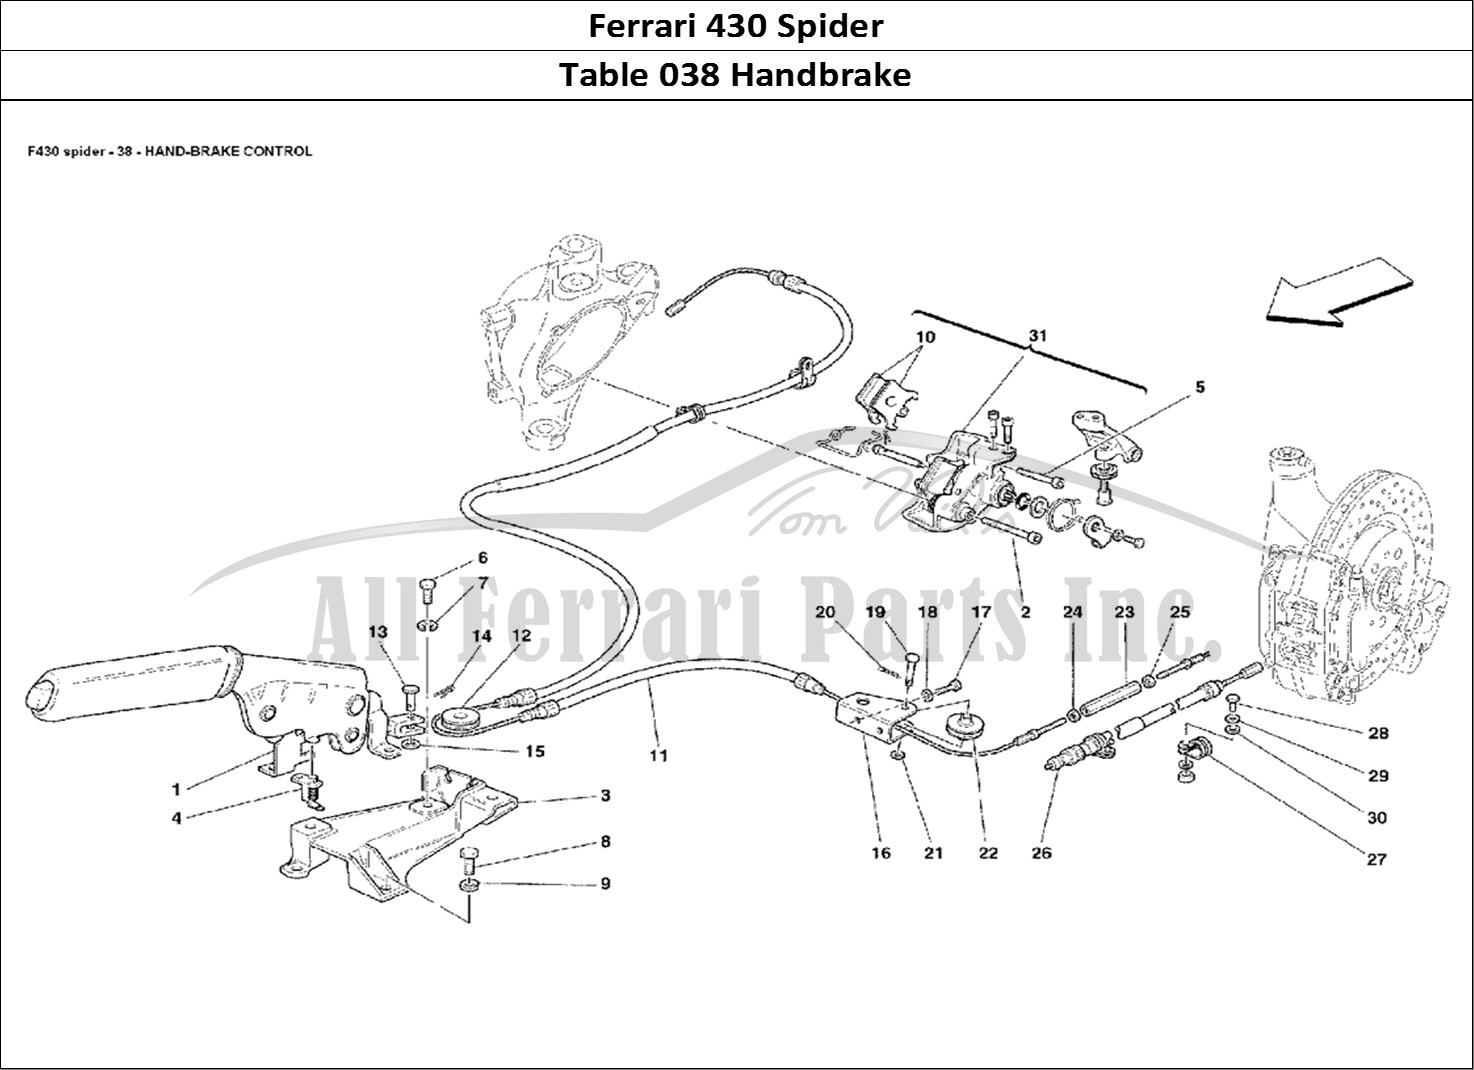 Ferrari Parts Ferrari 430 Spider Page 038 Hand-Brake Control